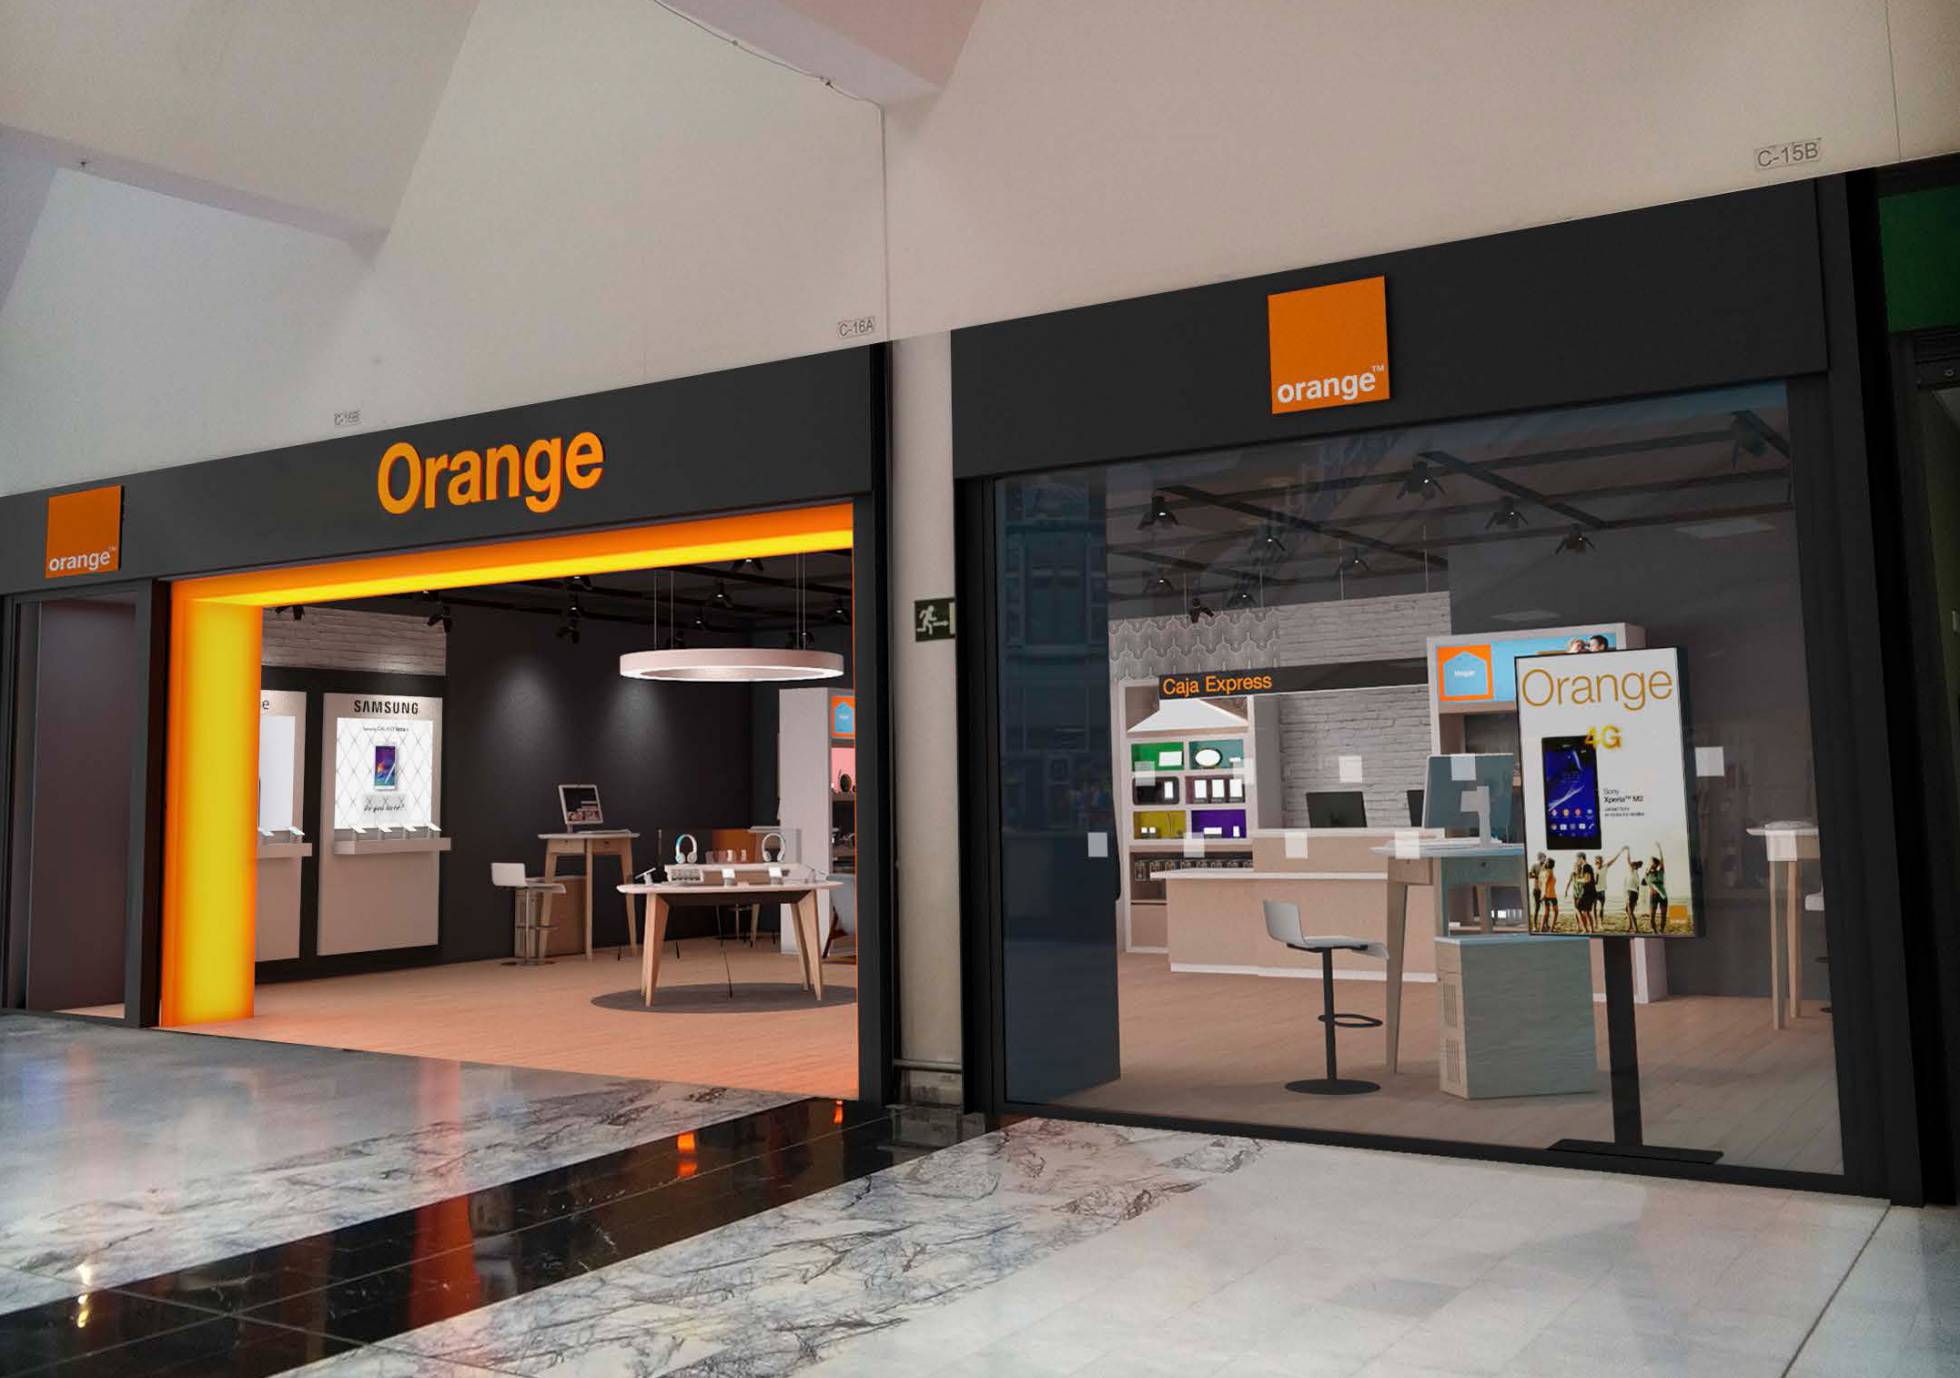 Orange alquila ‘pokémons’ para atraer clientes a sus tiendas